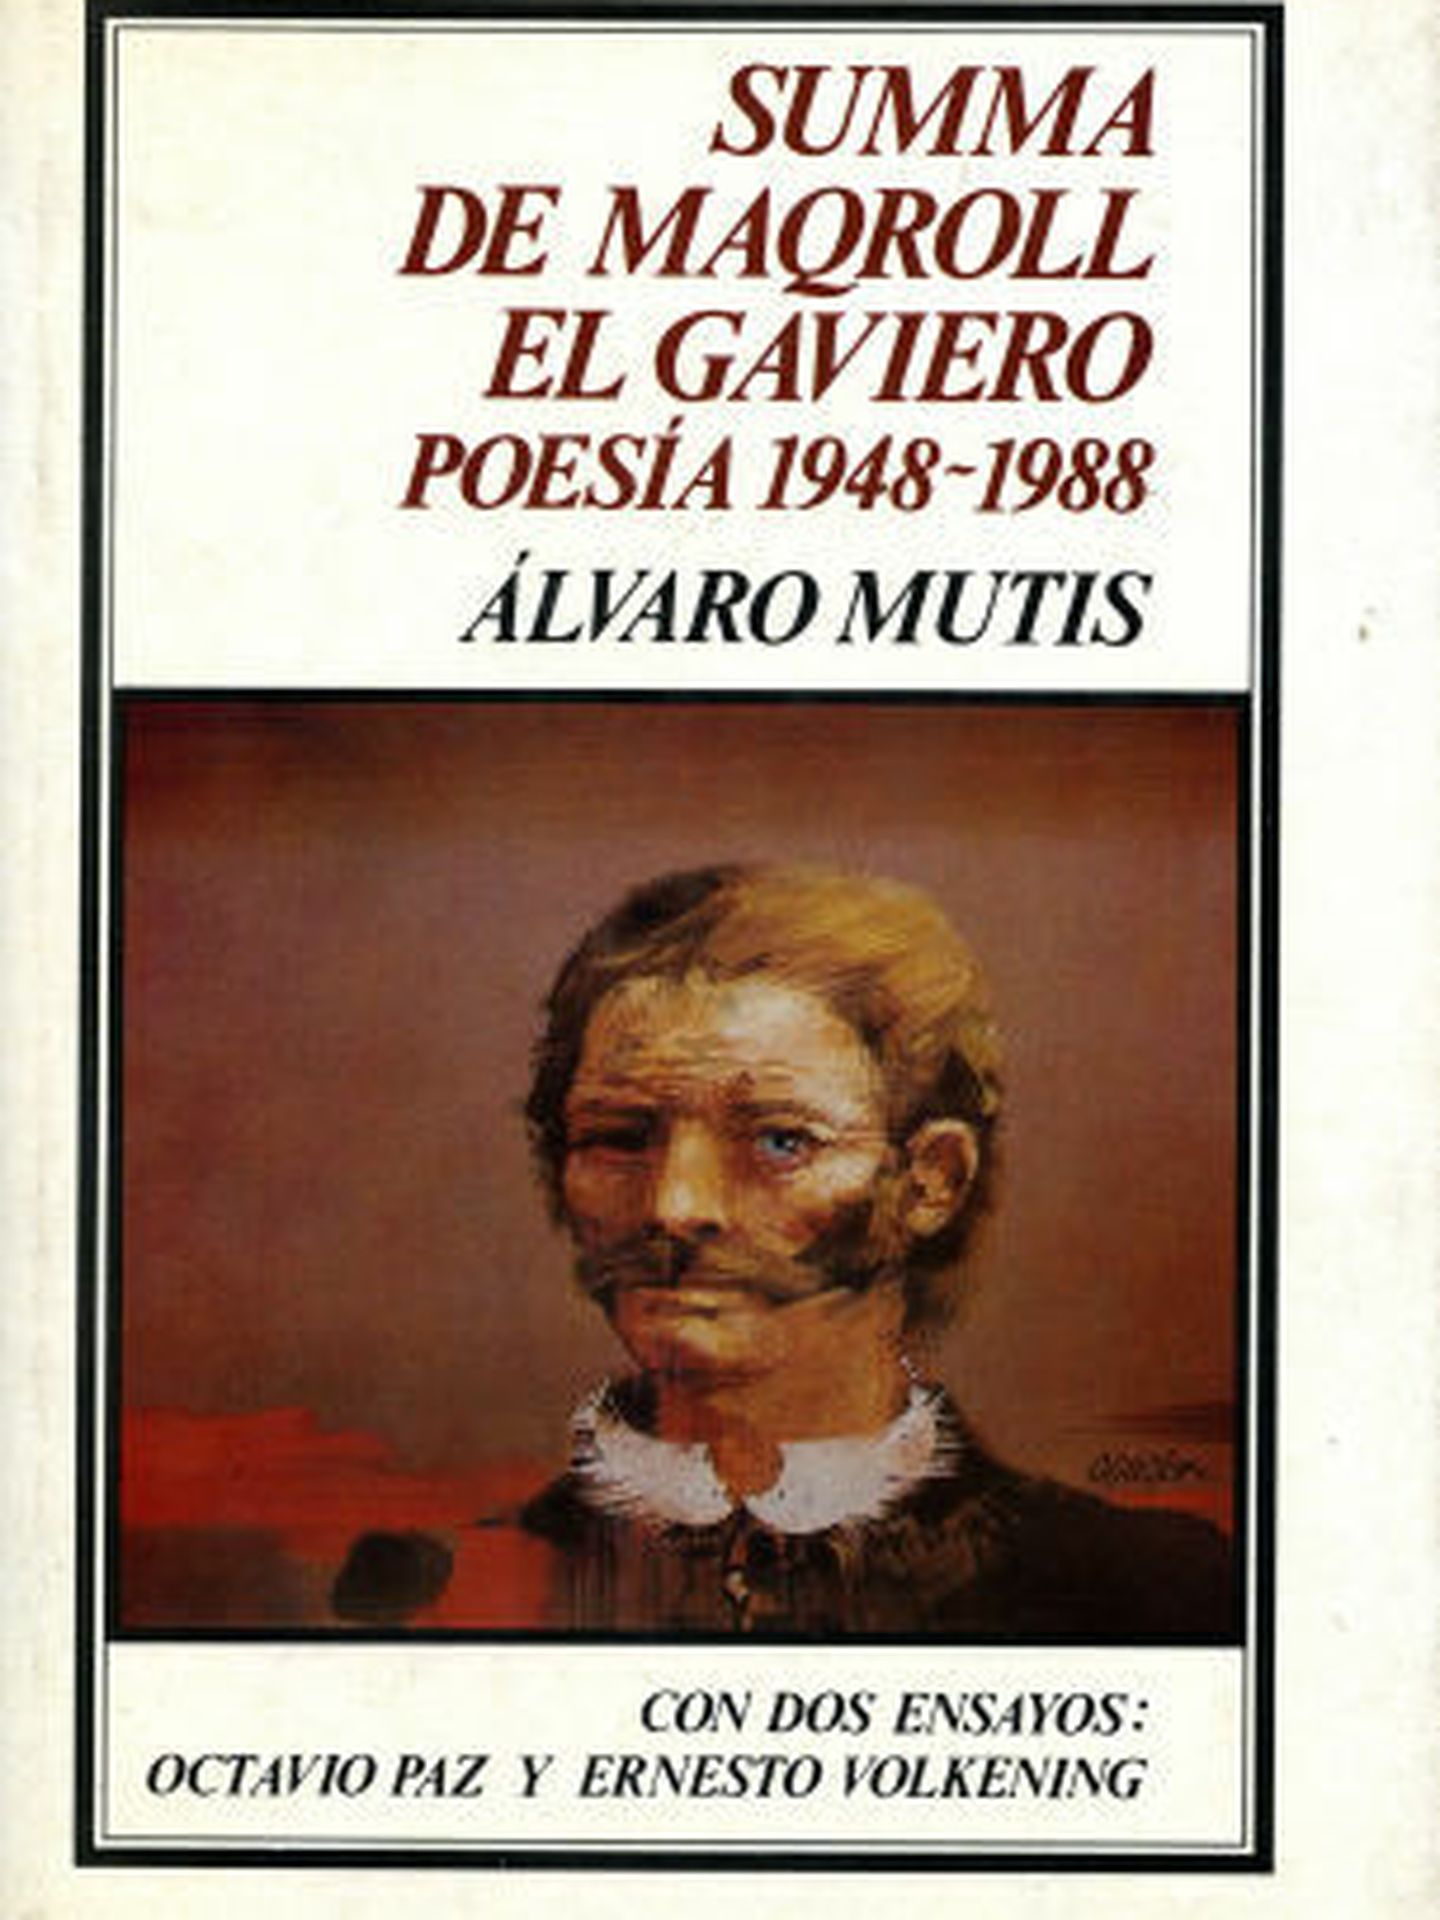 Edición de 'Summa de Maqroll el Gaviero', perteneciente al fotógrafo.